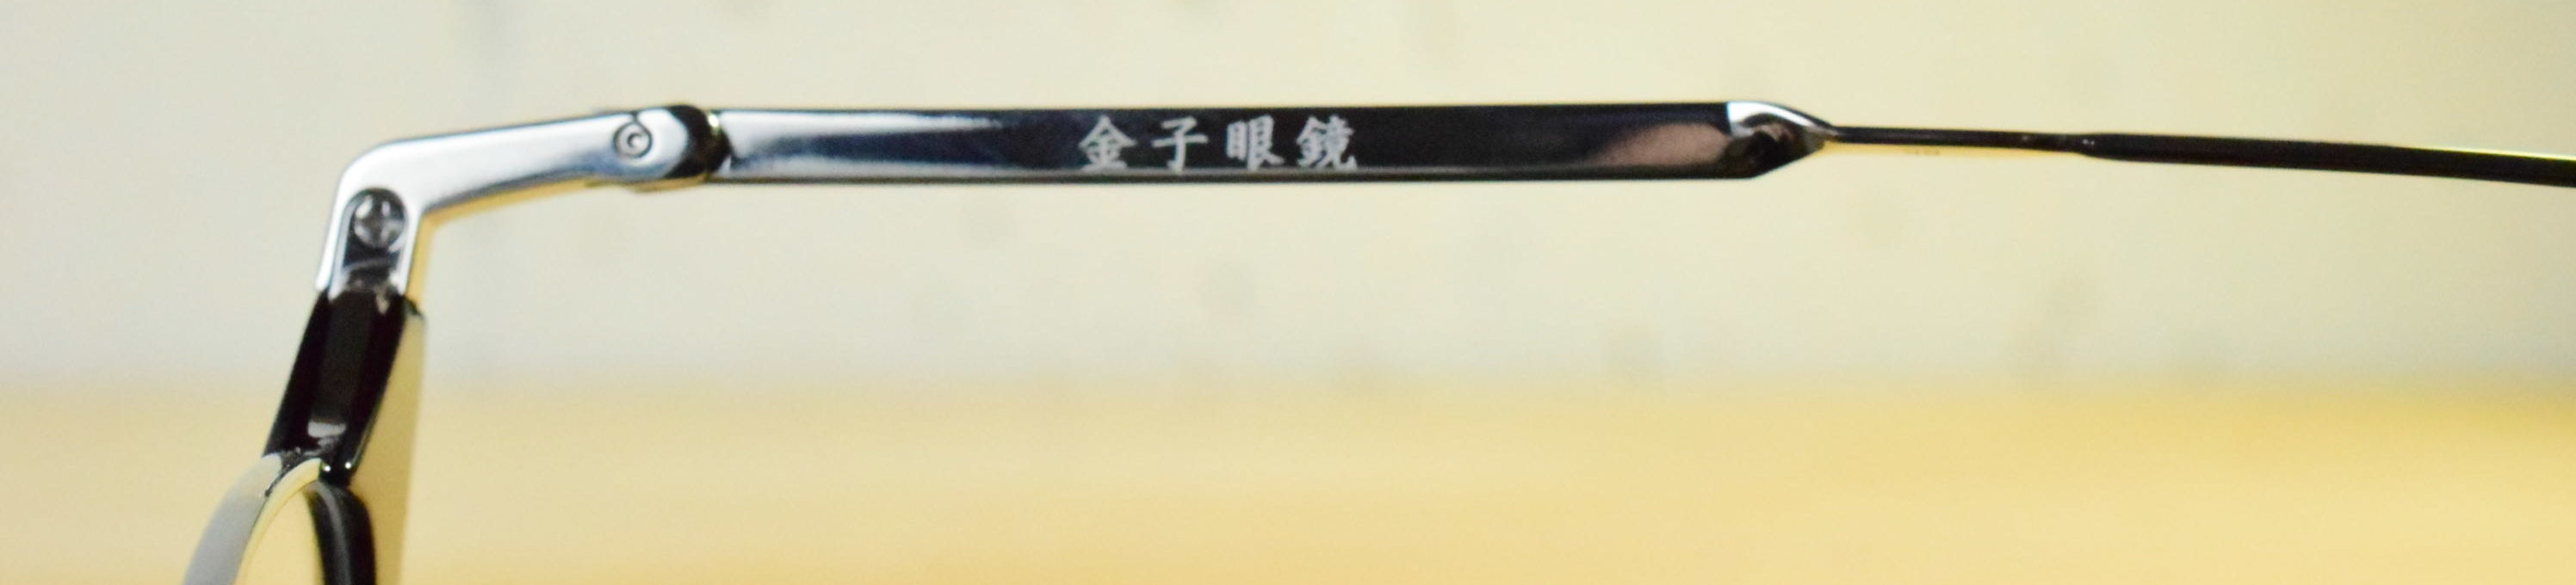 金子眼鏡 鯖江市を代表する老舗眼鏡ブランド チタン セル枠のフレーム